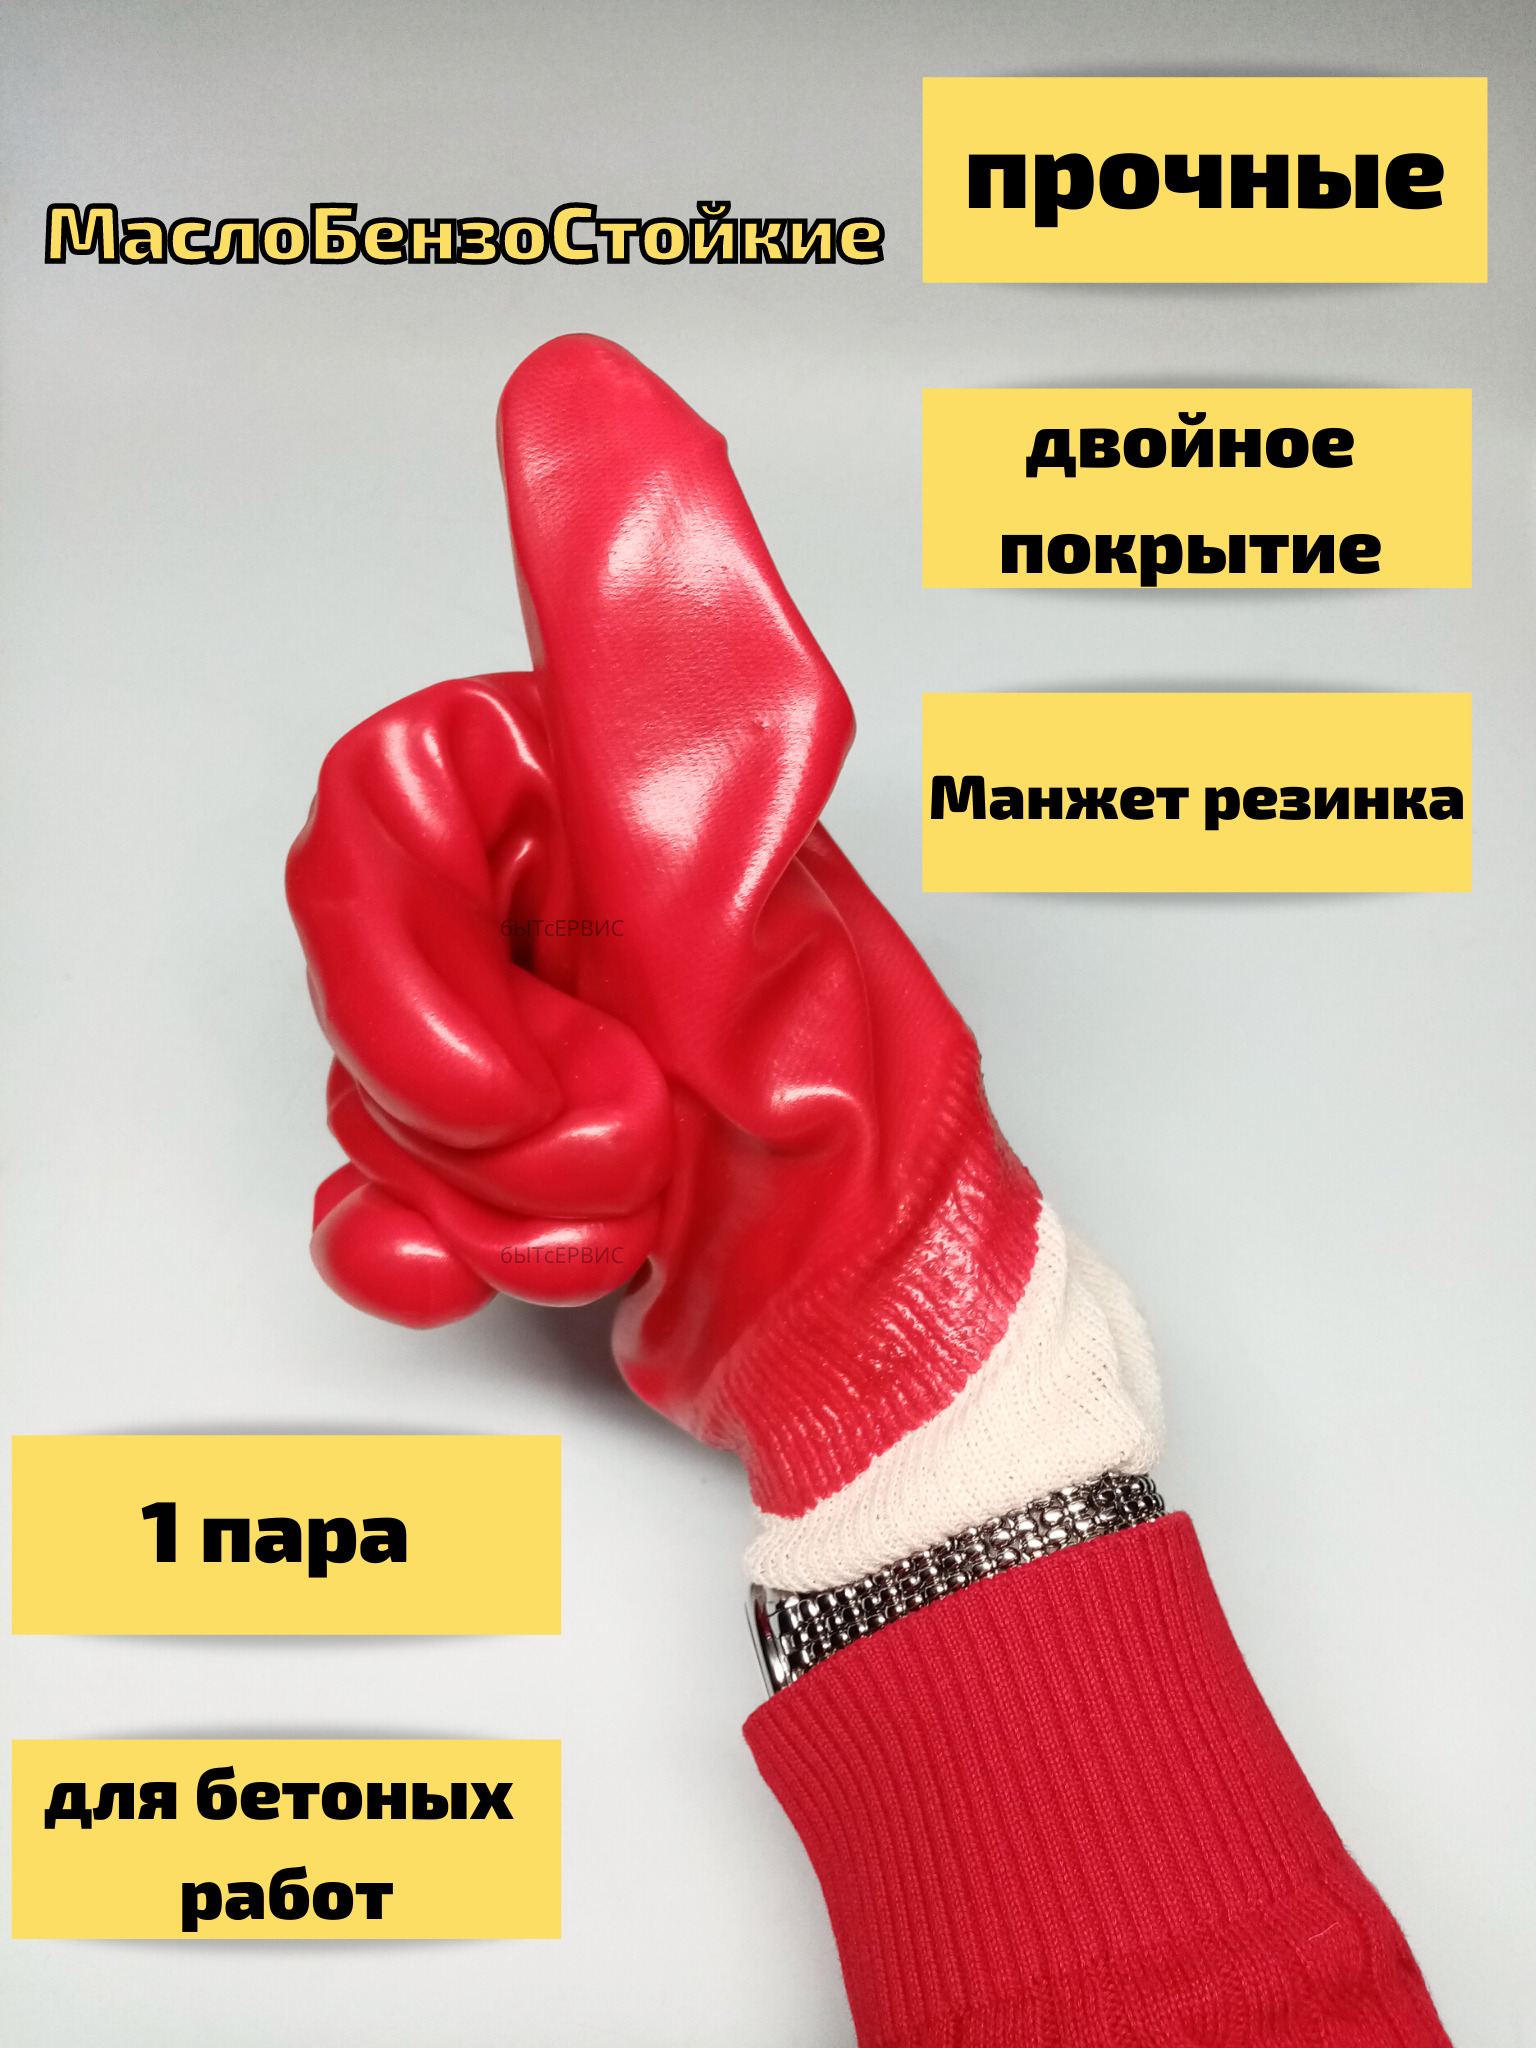 Перчатки защитные БытСервис , маслобензостойкие, МБС обливные, красные